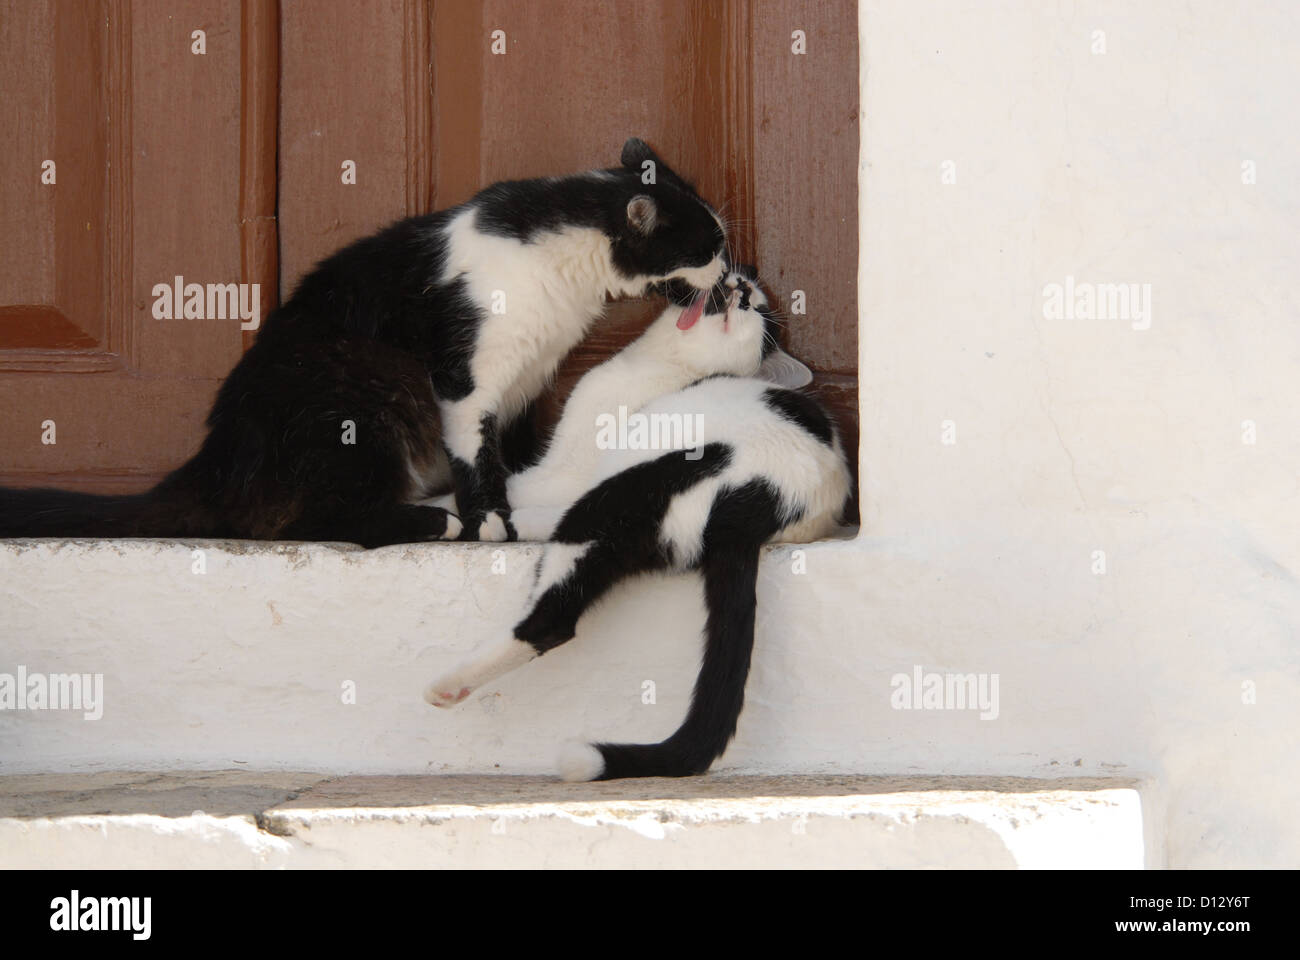 Zwei Hauskatzen, Schwarz-Weiss, putzen sich gegenseitig zärtlich auf einer Türschwelle, Dodekanes, Griechenland, due gatti, nero Foto Stock